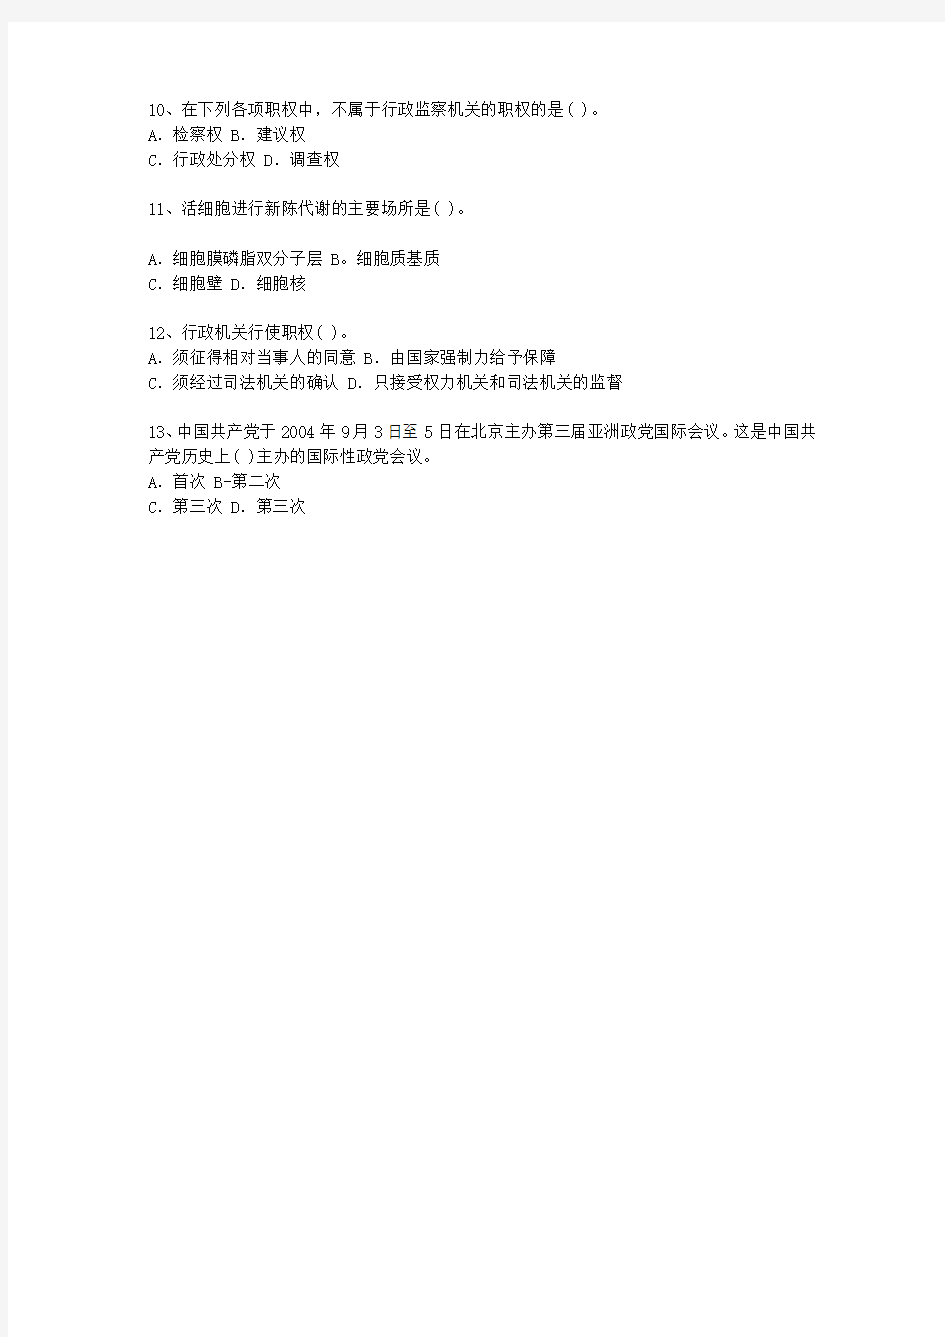 2011湖北省公开选拔镇副科级领导干部考试答题技巧